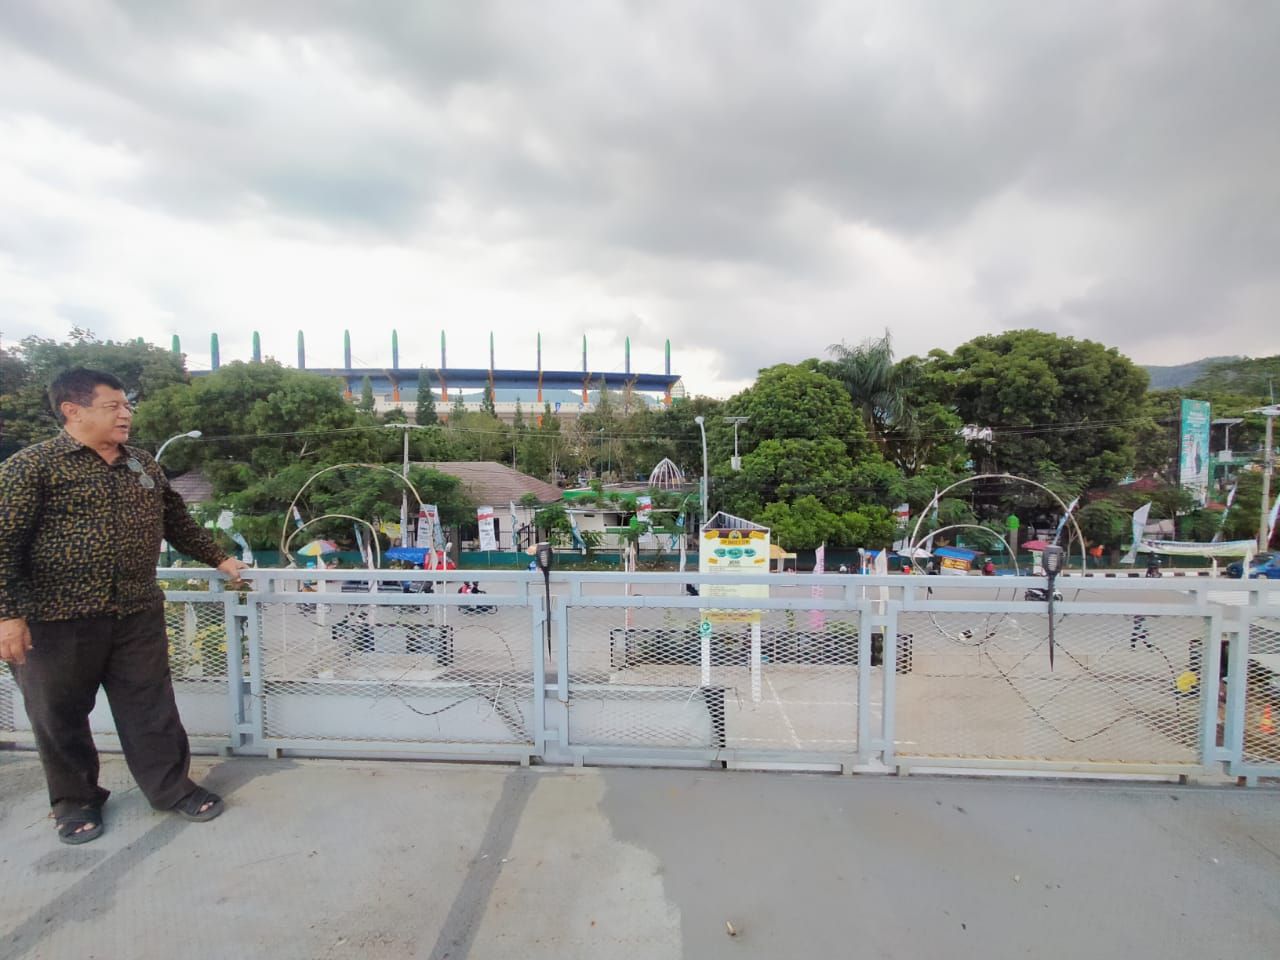 Sky deck di lantai 3 objek wisata kuliner Sop Bakso Haji Soni, spot foto instagramable dengan pemandangan langsung ke Stadion Si Jalak Harupat./ Feby Syarifah - GalamediaNews